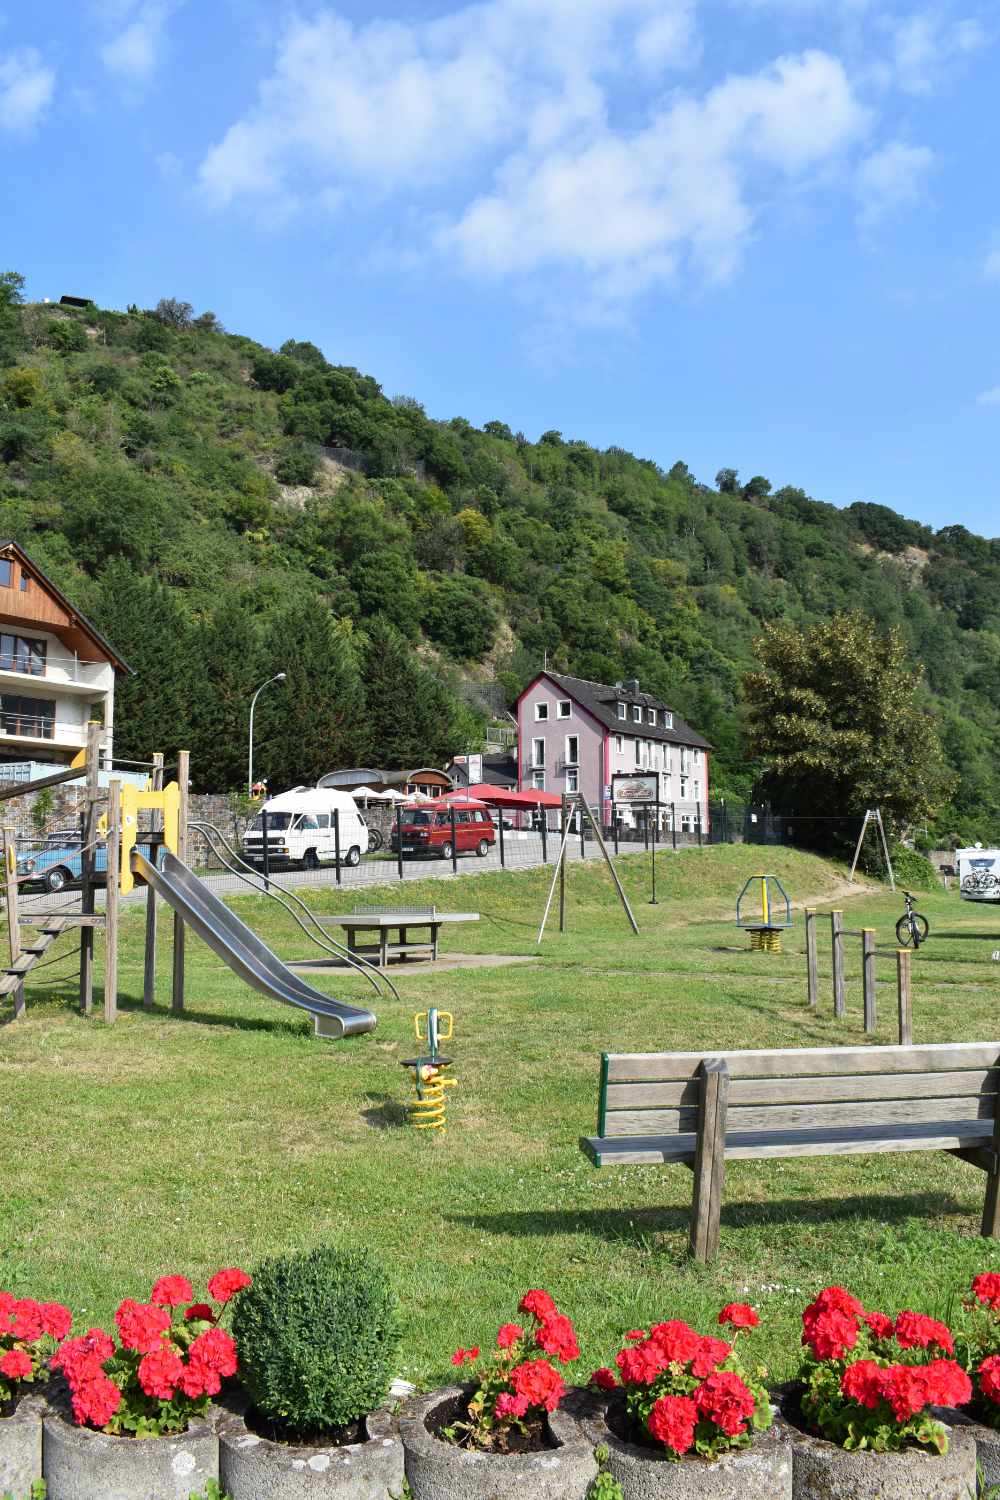 Kinder-Spielplatz auf dem Campingplatz Loreleyblick